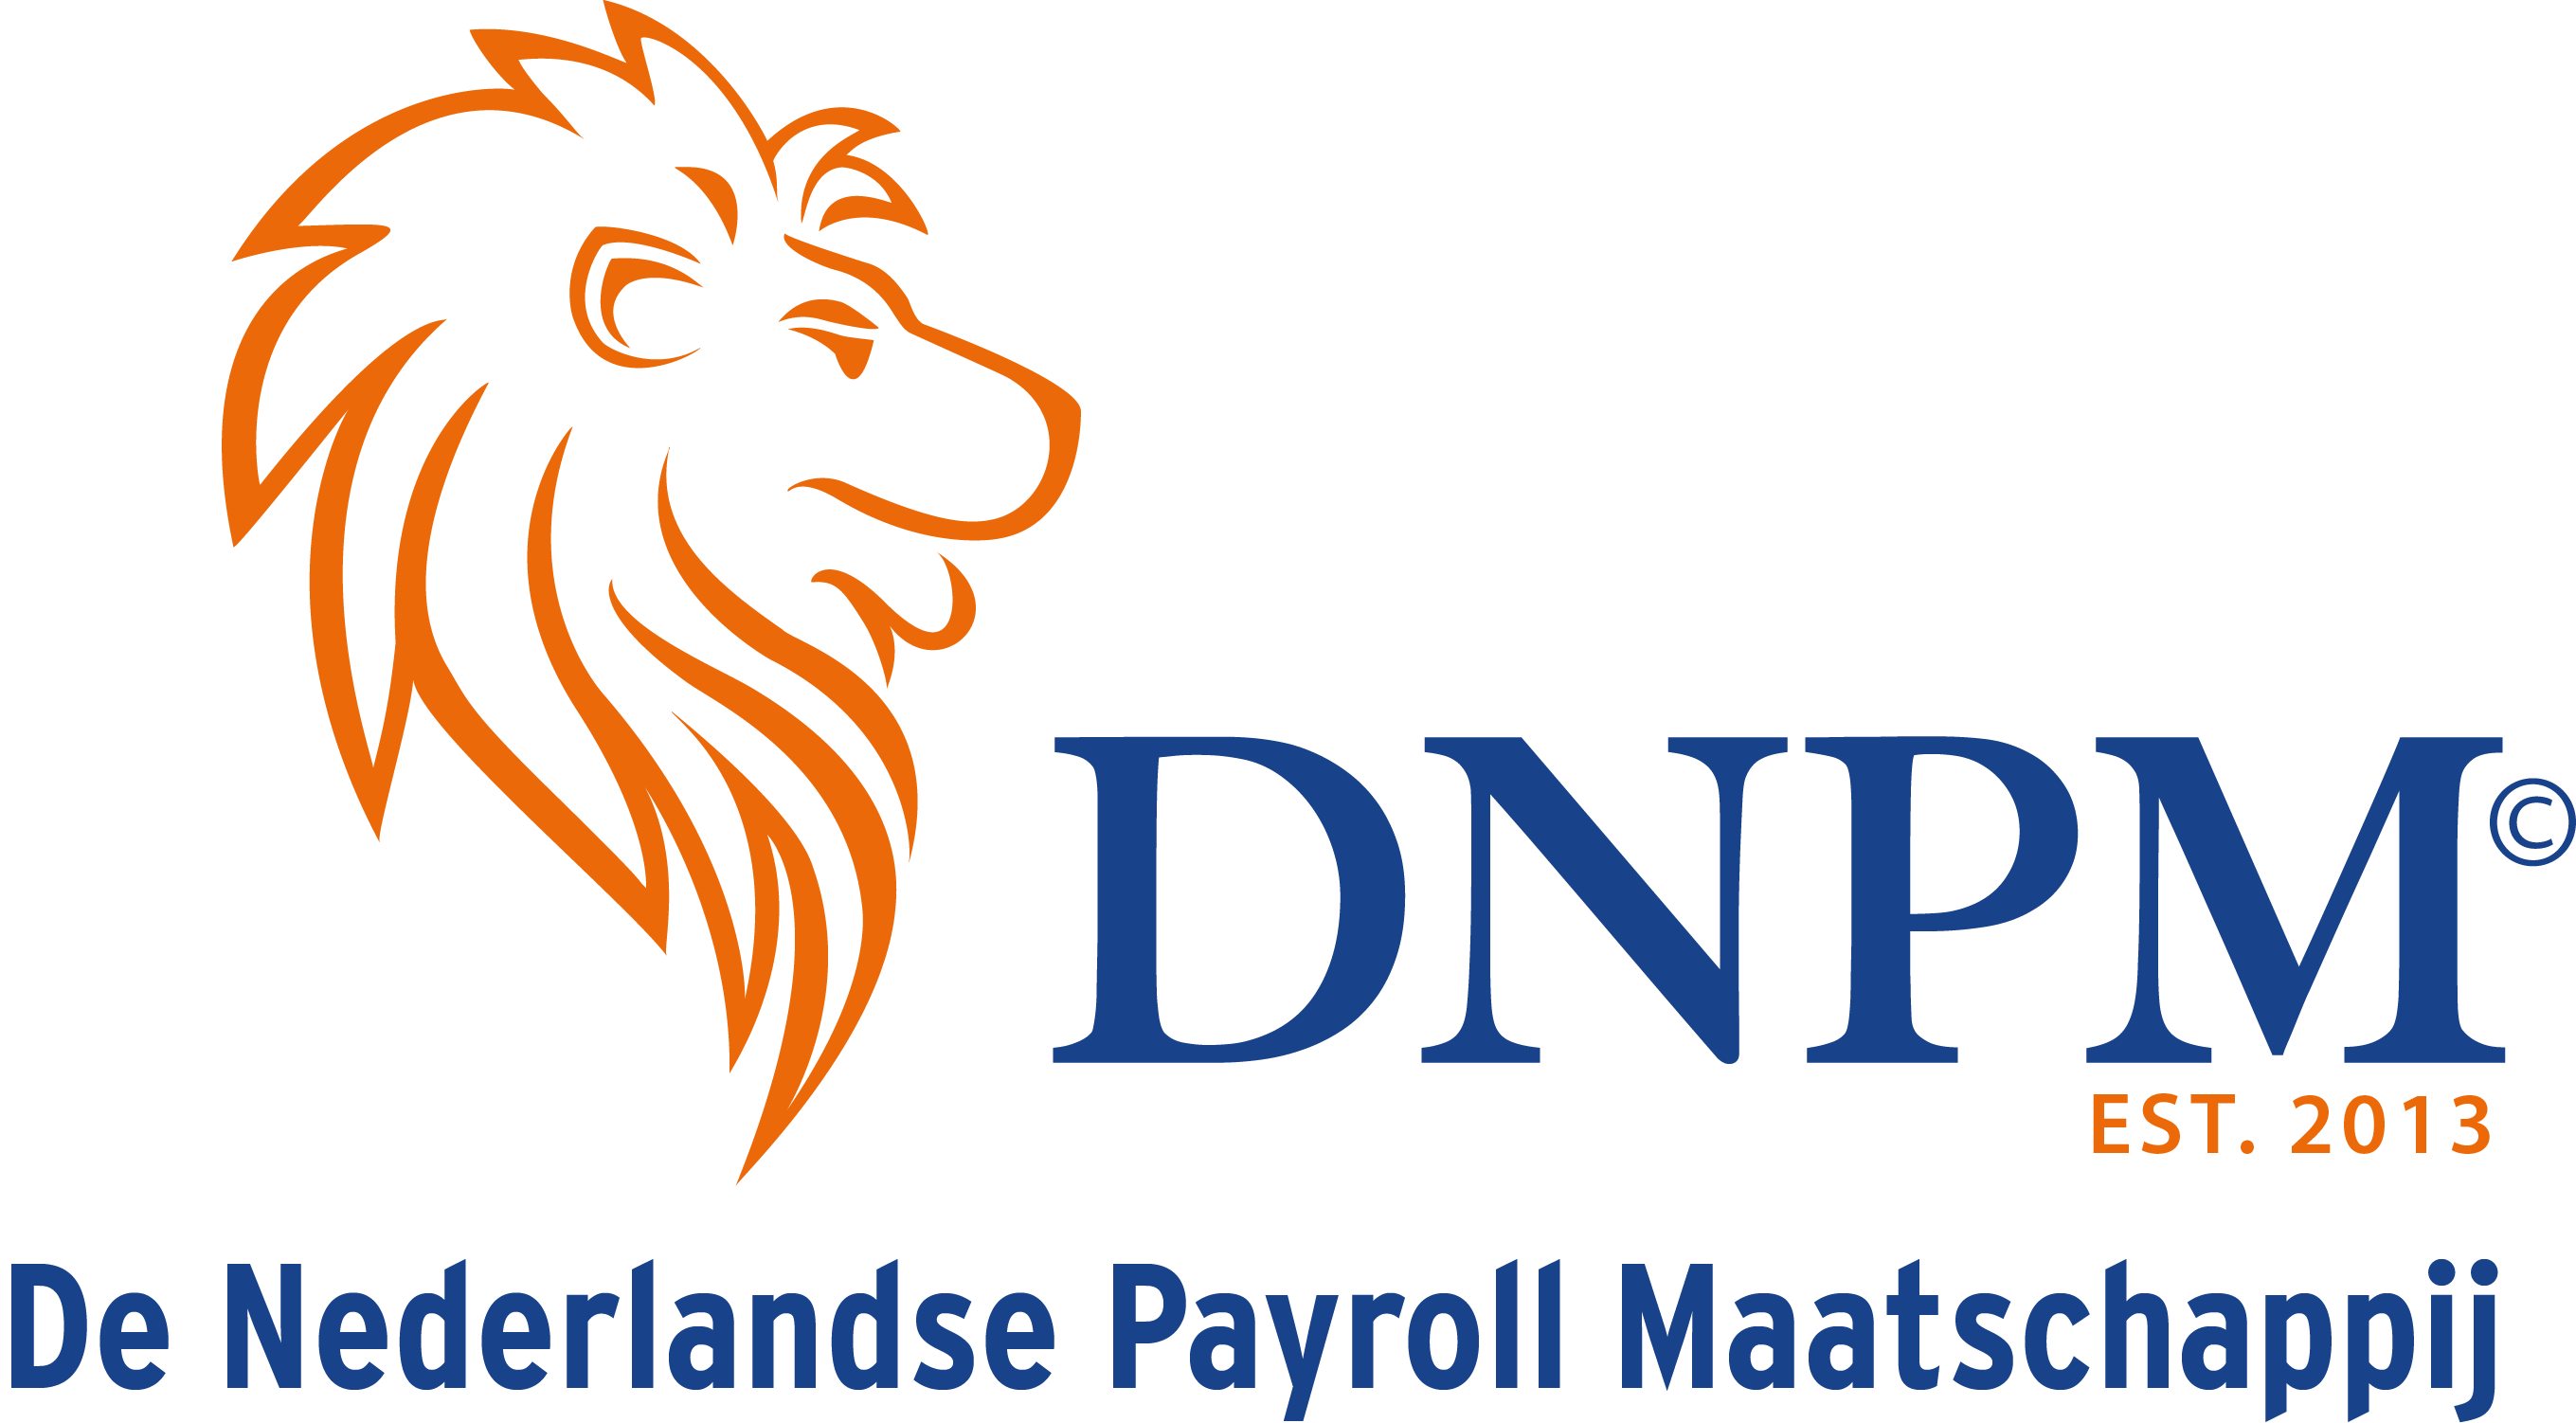 De Nederlandse Payroll Maatschappij